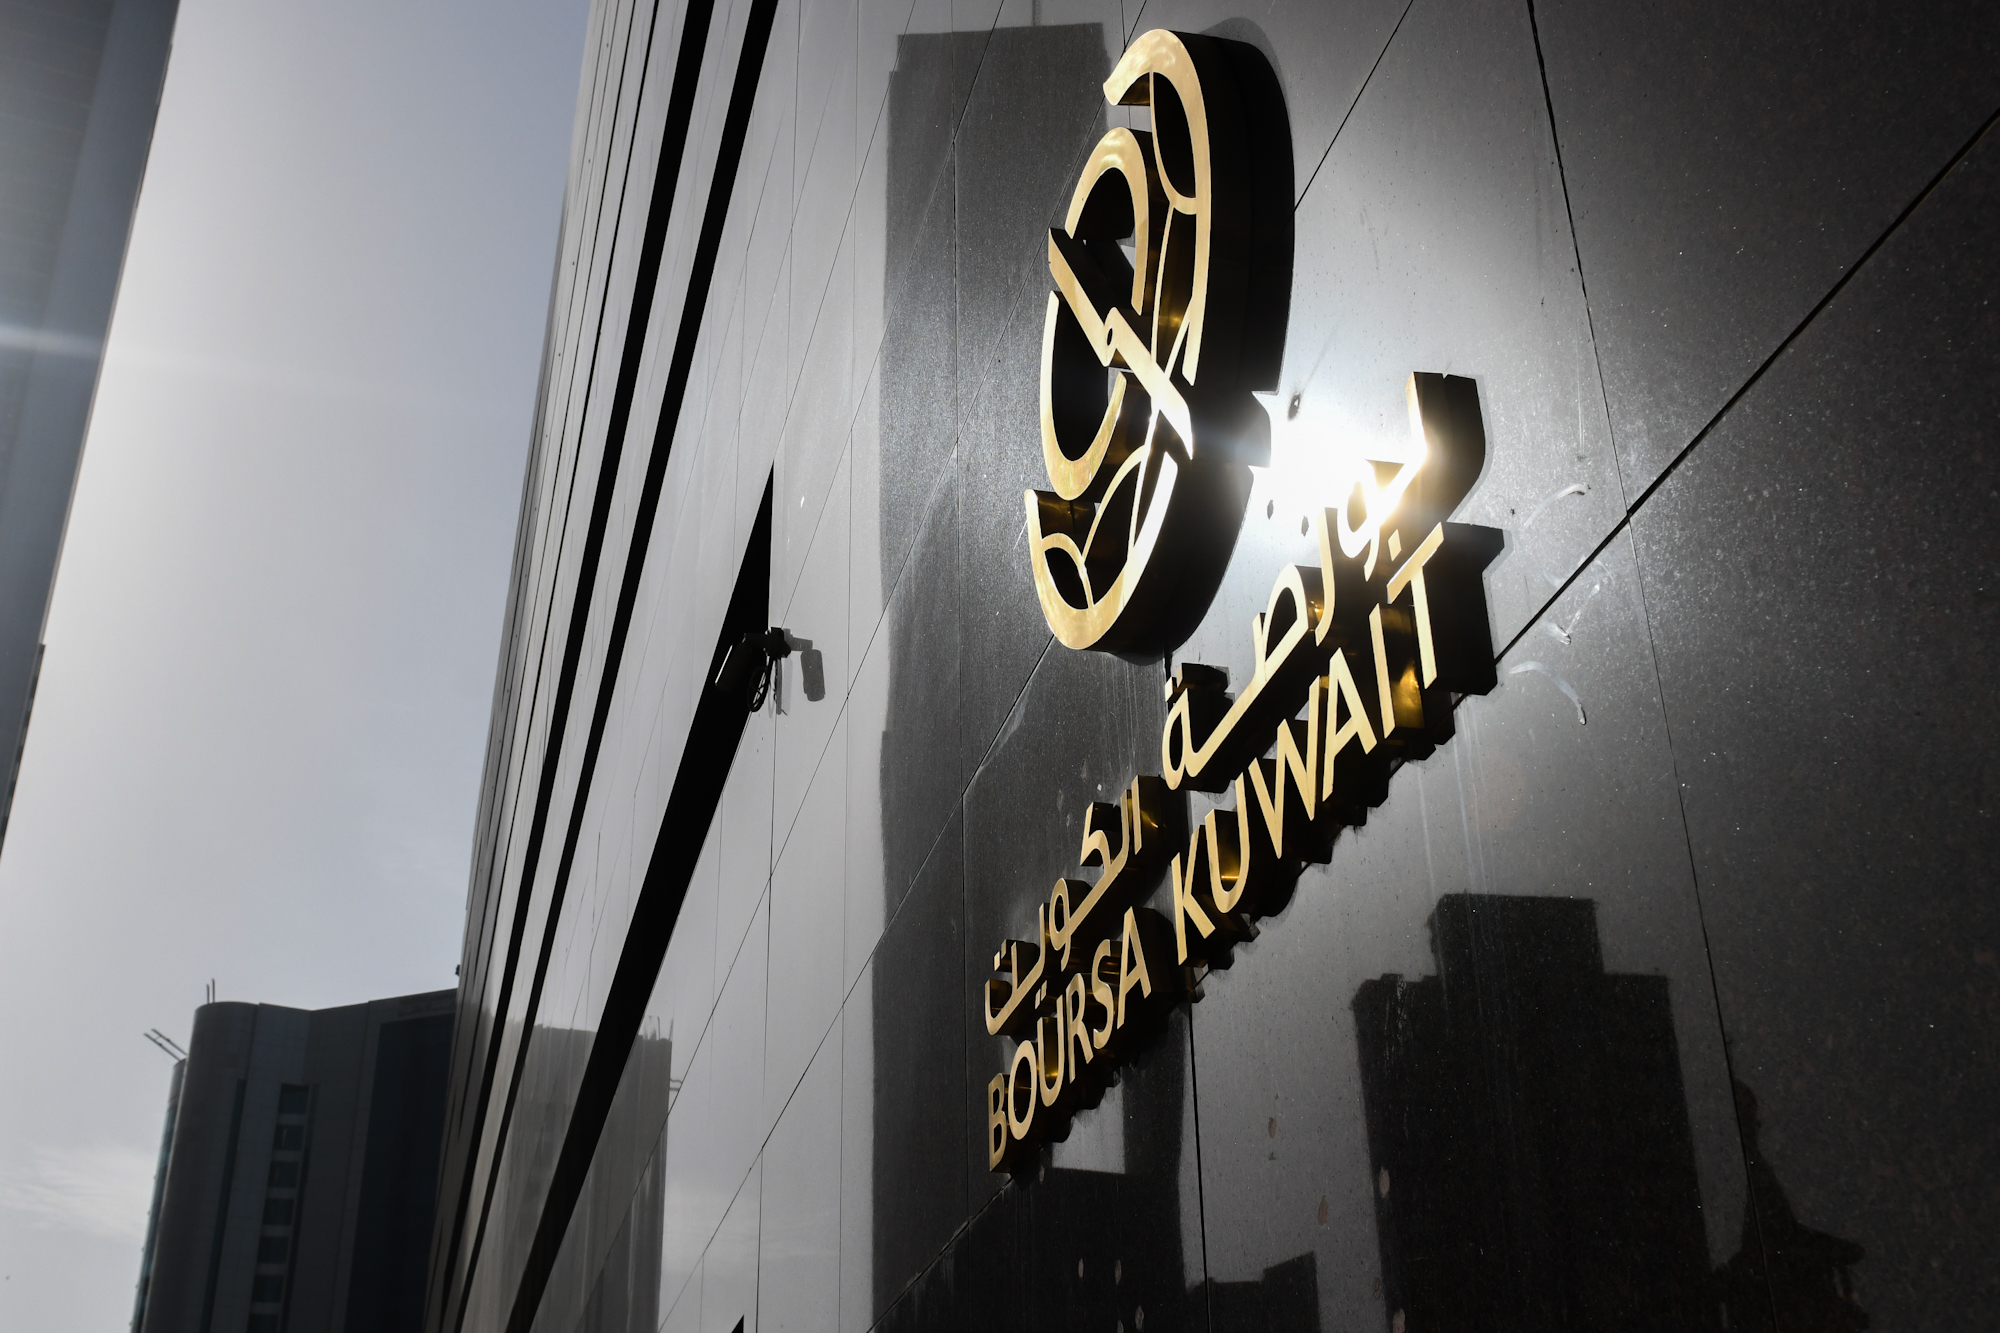  بورصة الكويت تغلق تعاملاتها على ارتفاع مؤشرها العام 9ر20 نقطة ليبلغ 98ر7204 بنسبة 29ر0 في المئة 